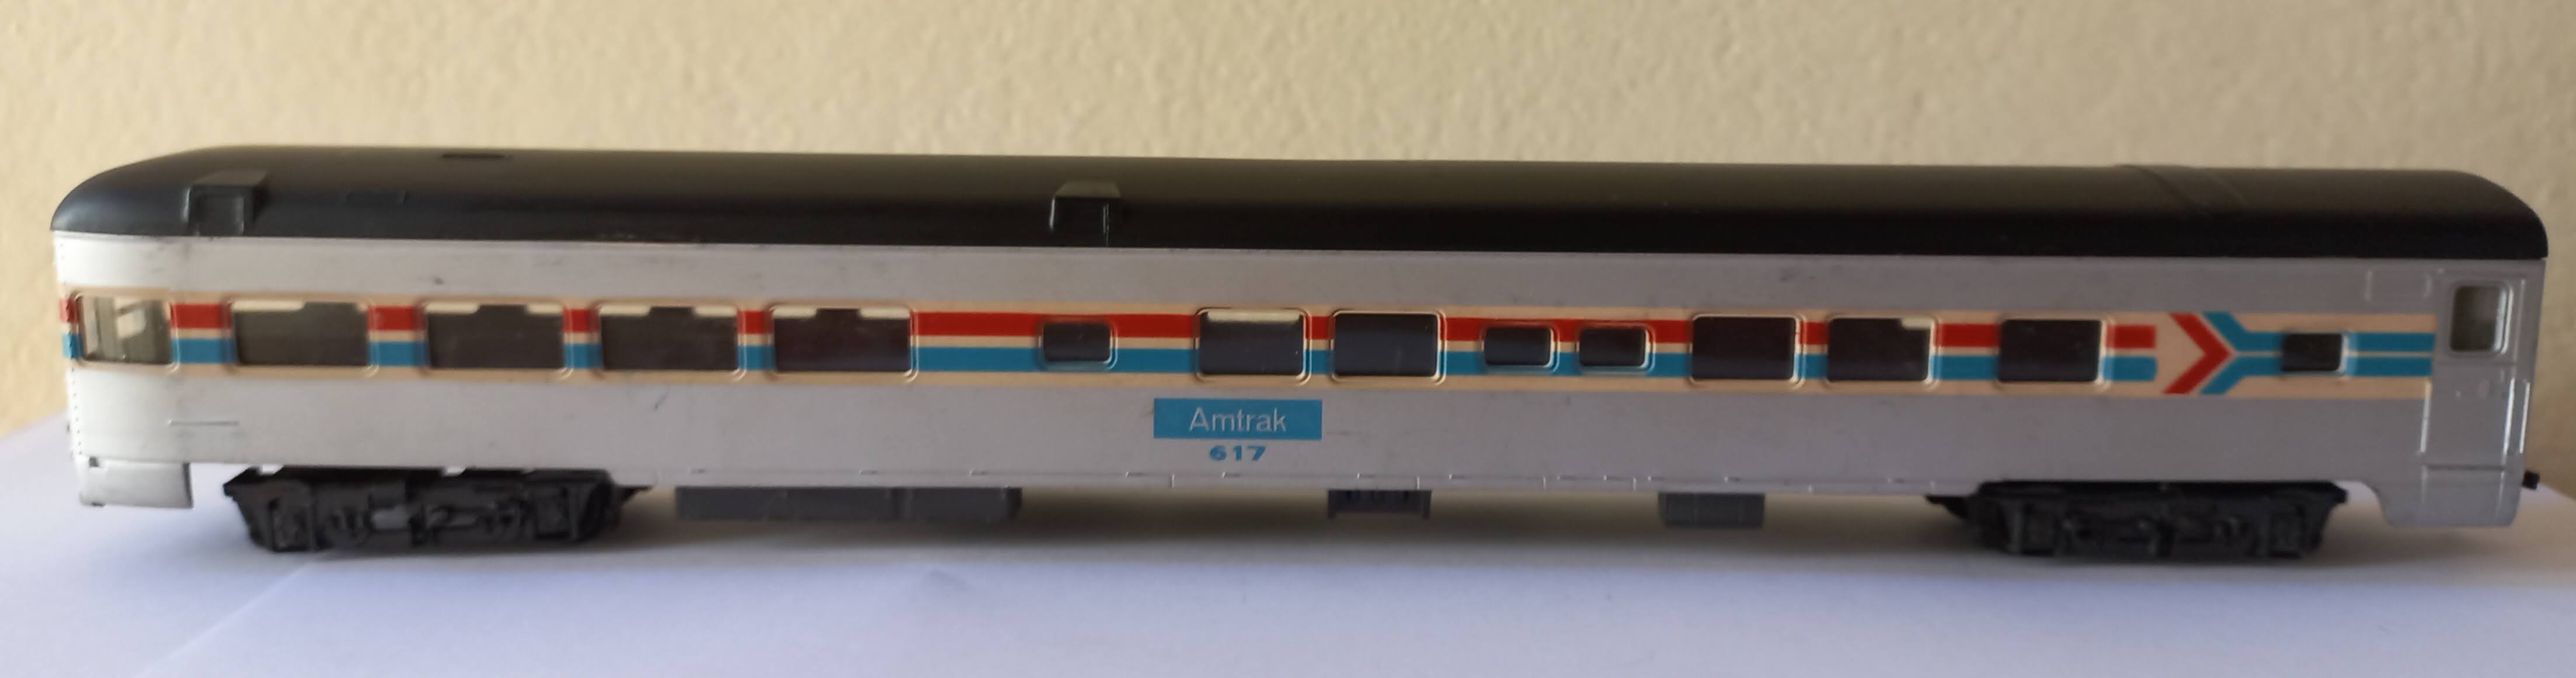 Rivarrossi - Carro Cauda Amtrak # 617 (29 cm)